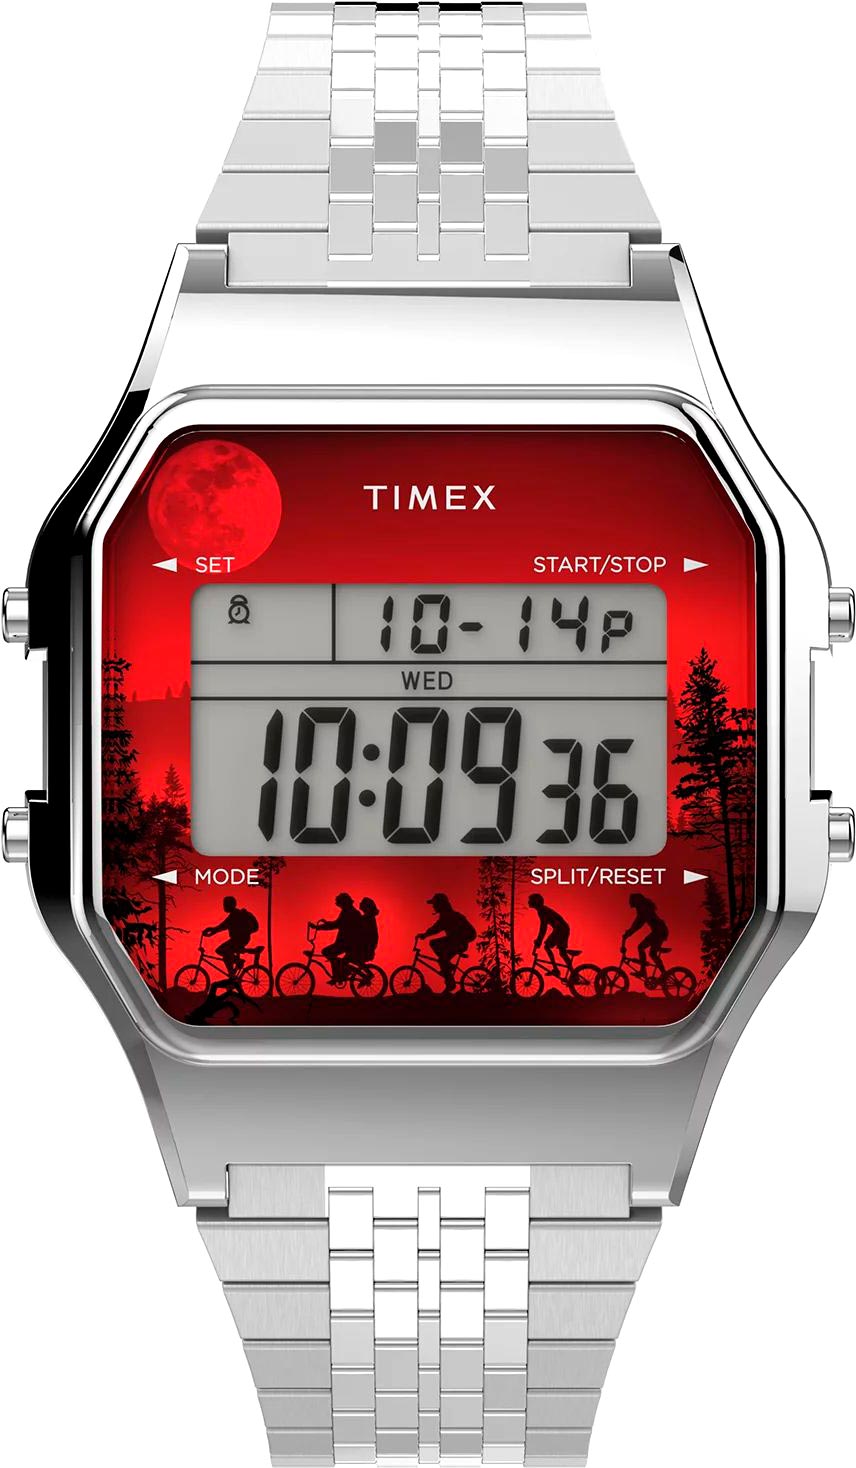   Timex TW2V50900  